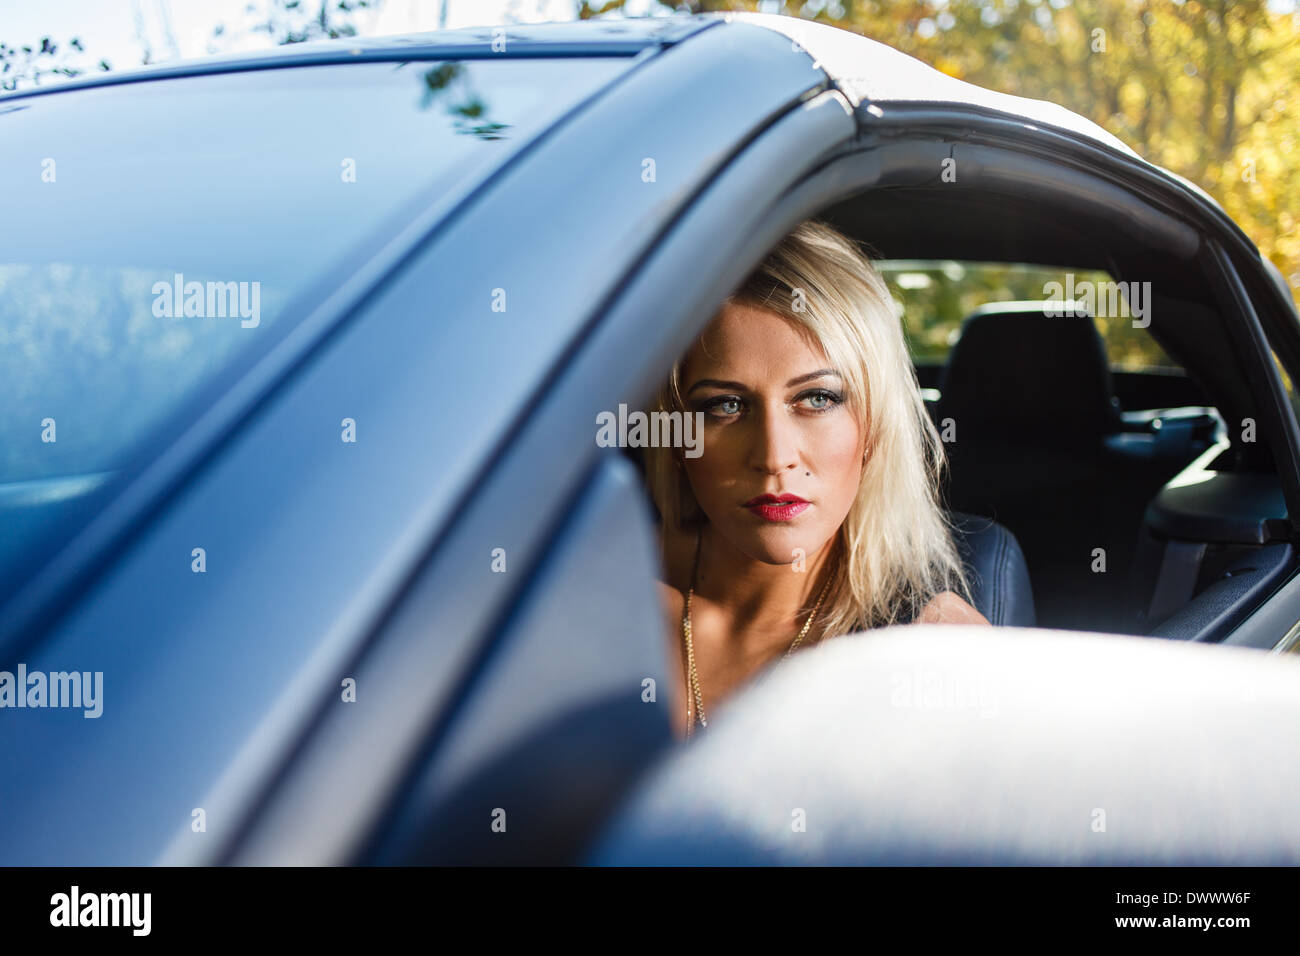 Young blonde woman portrait dans une voiture. Banque D'Images